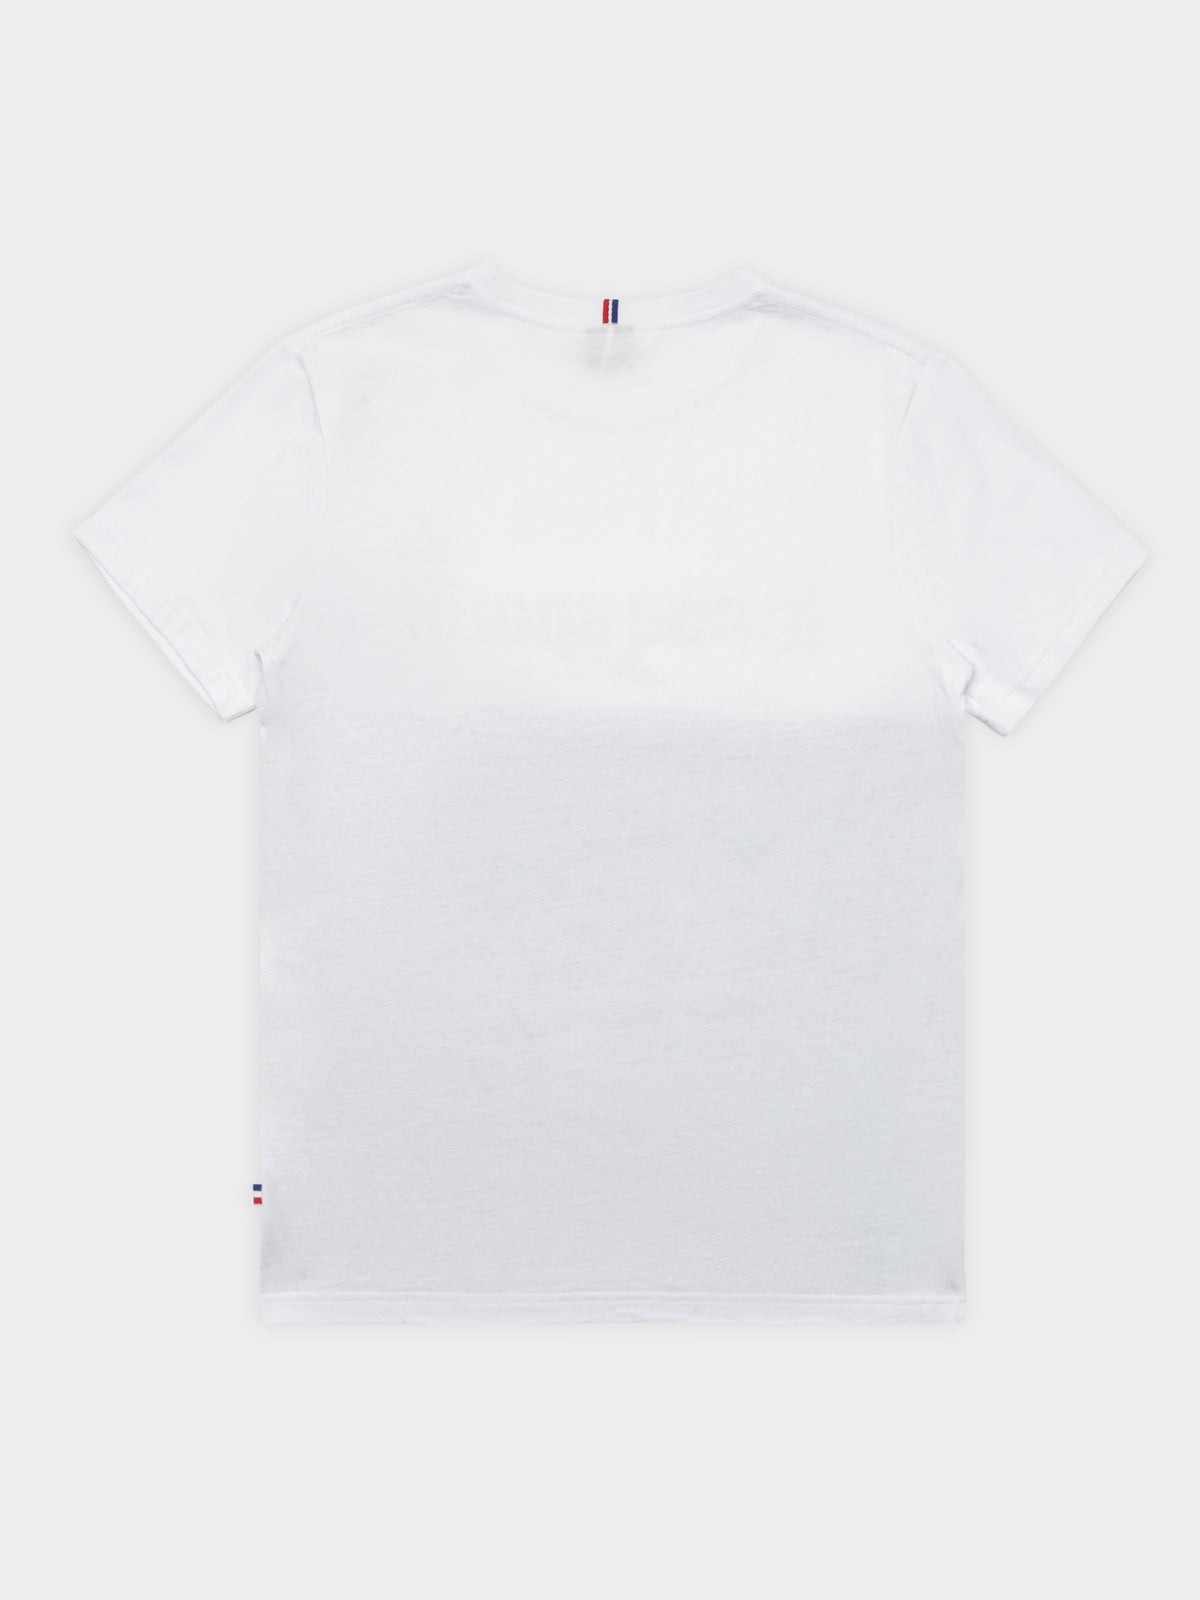 Sponser T-Shirt in White